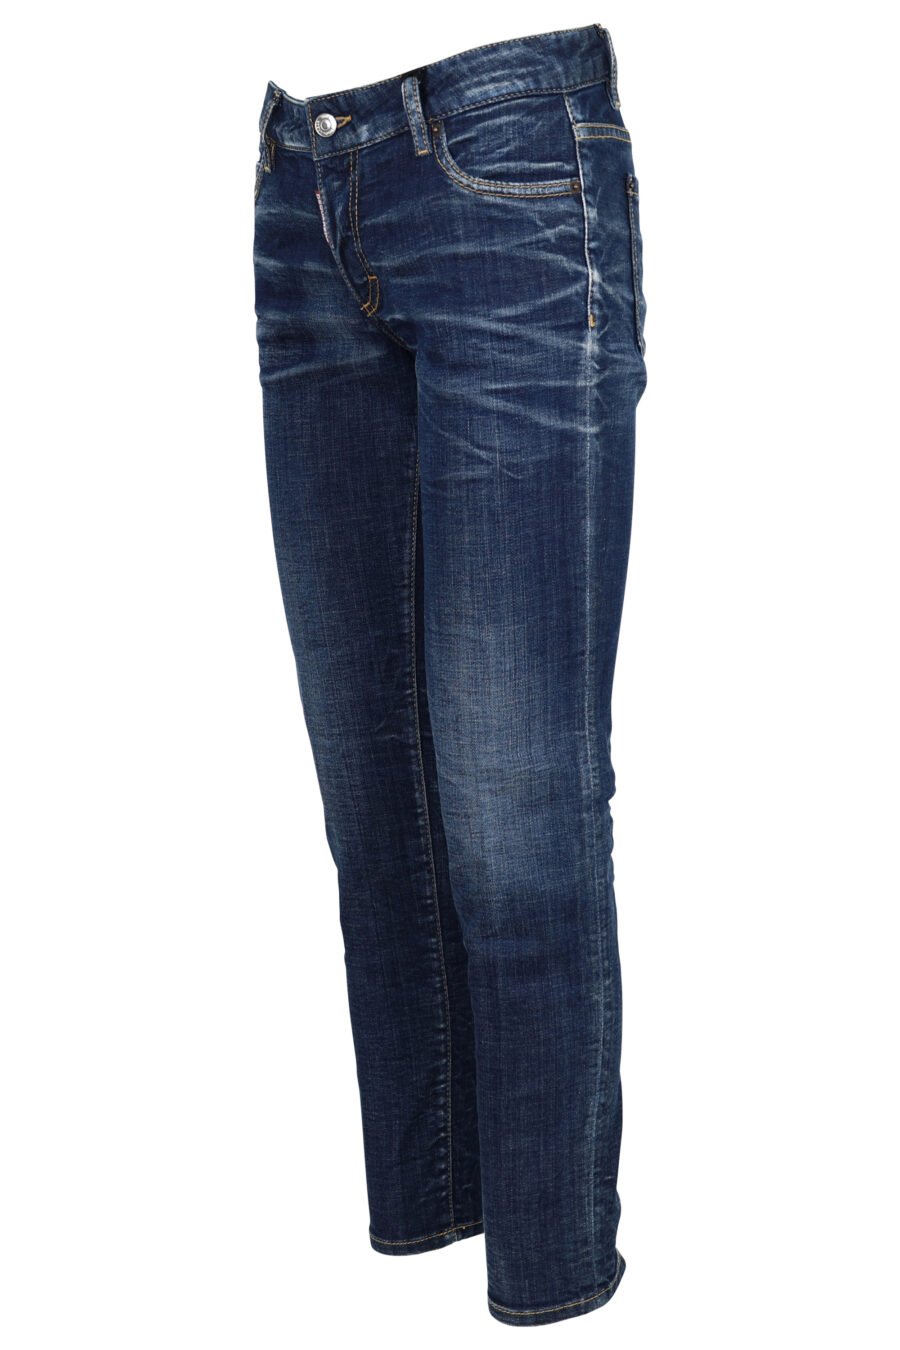 Pantalon en denim bleu "Jennifer Jean" semi-porté - 8054148309732 1